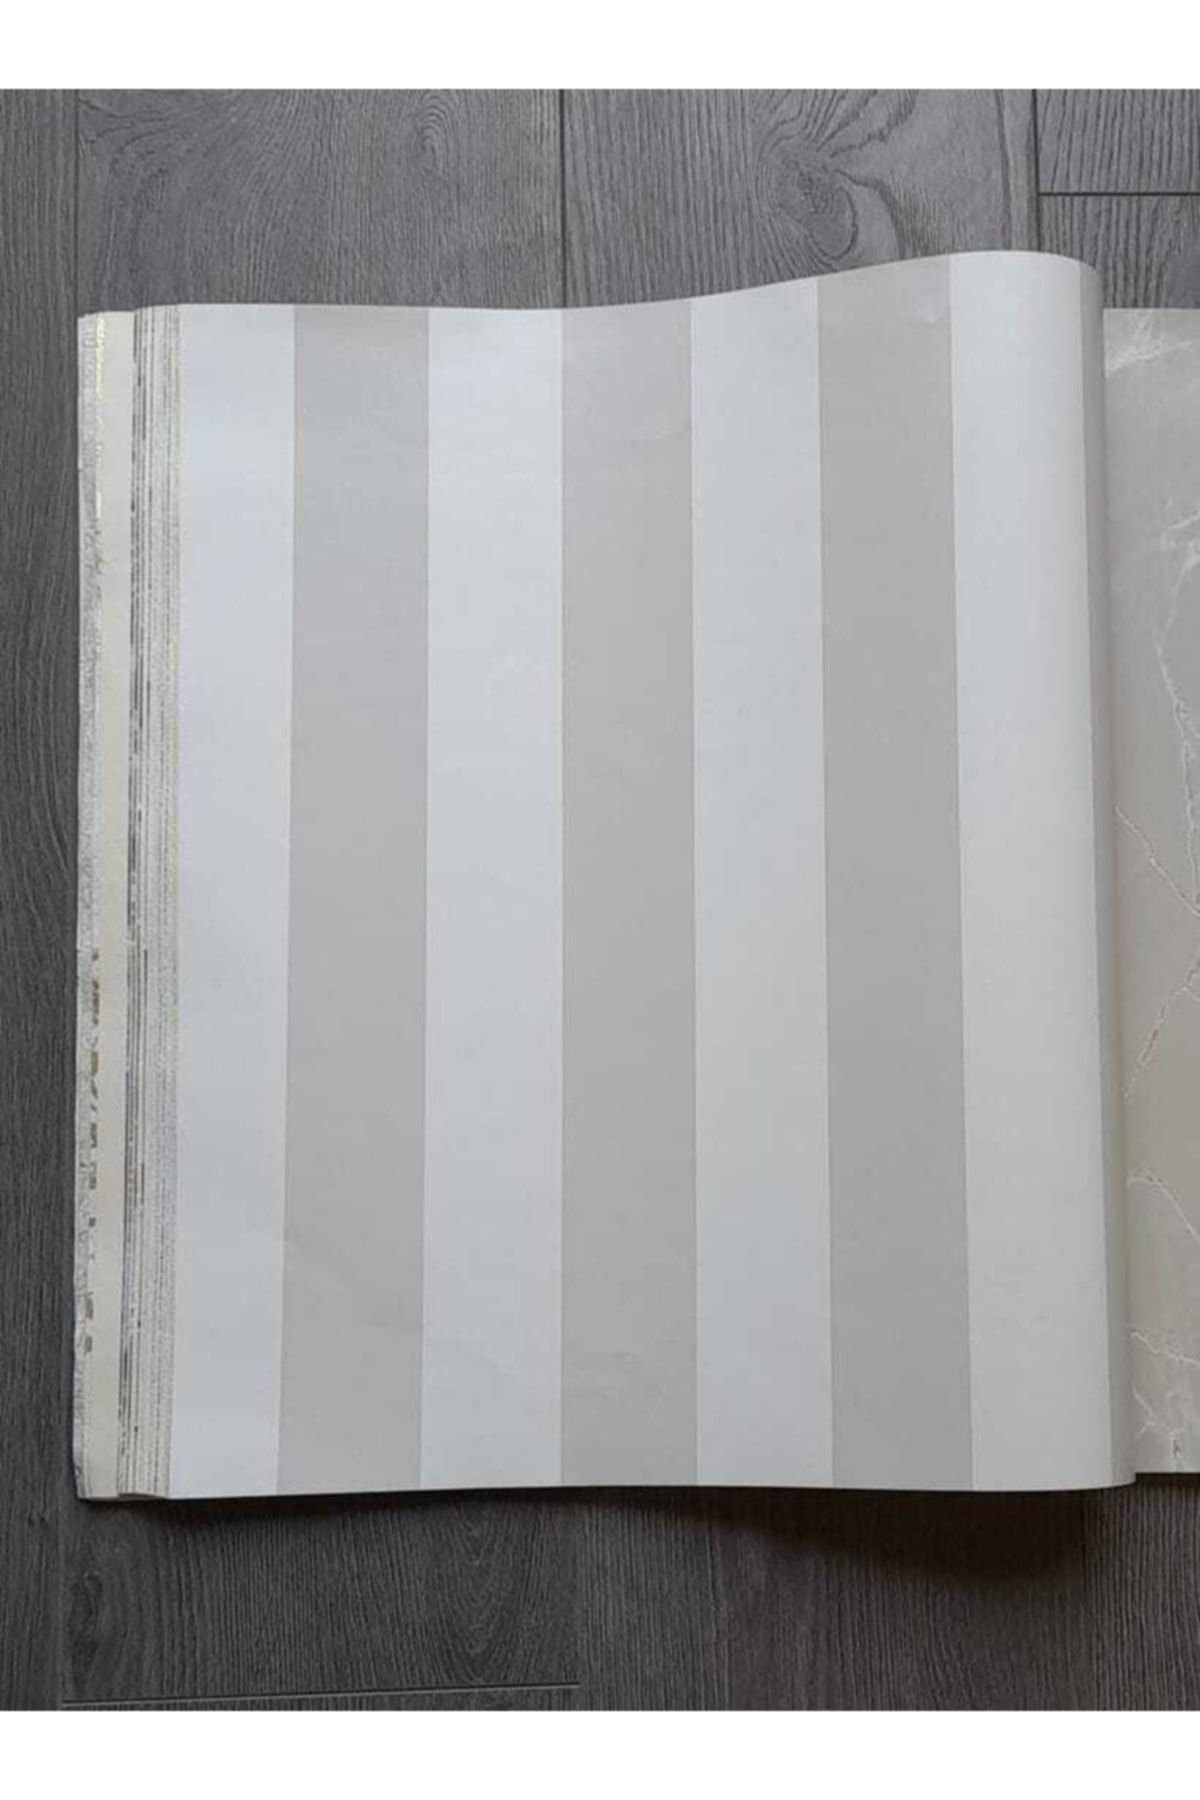 oskar Dikey Çizgili Duvar Kağıtları Koleksiyonu (9 Ayrı Renk Ve Desen Seçeneği)